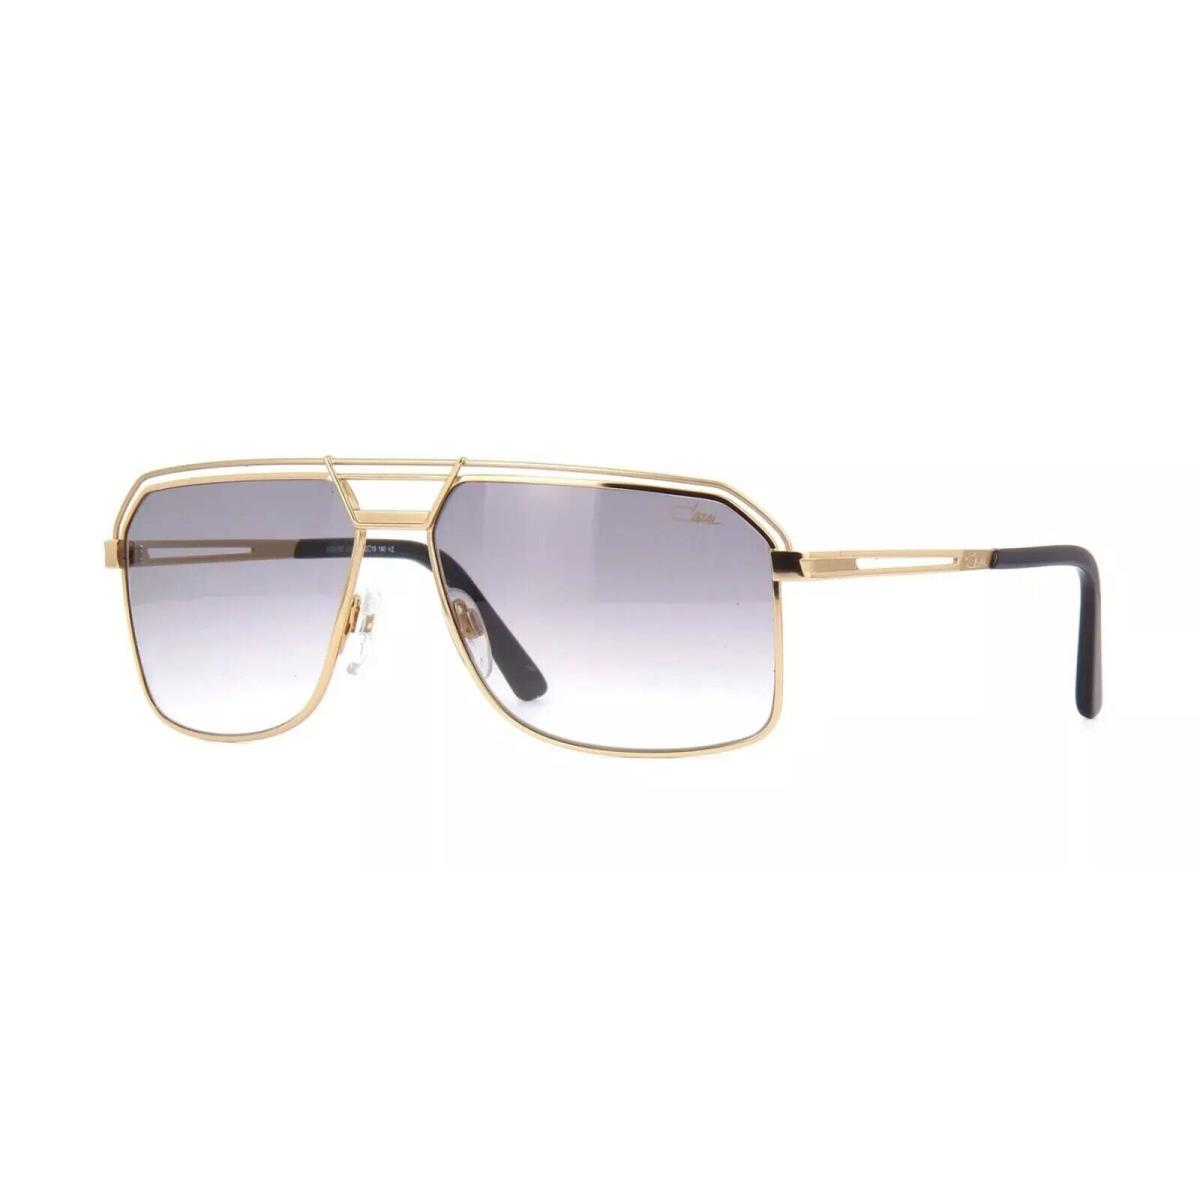 Cazal Legends 992 001 Black Gold Grey Gradient Lenses Sunglasses - Frame: Black, Lens: Gray